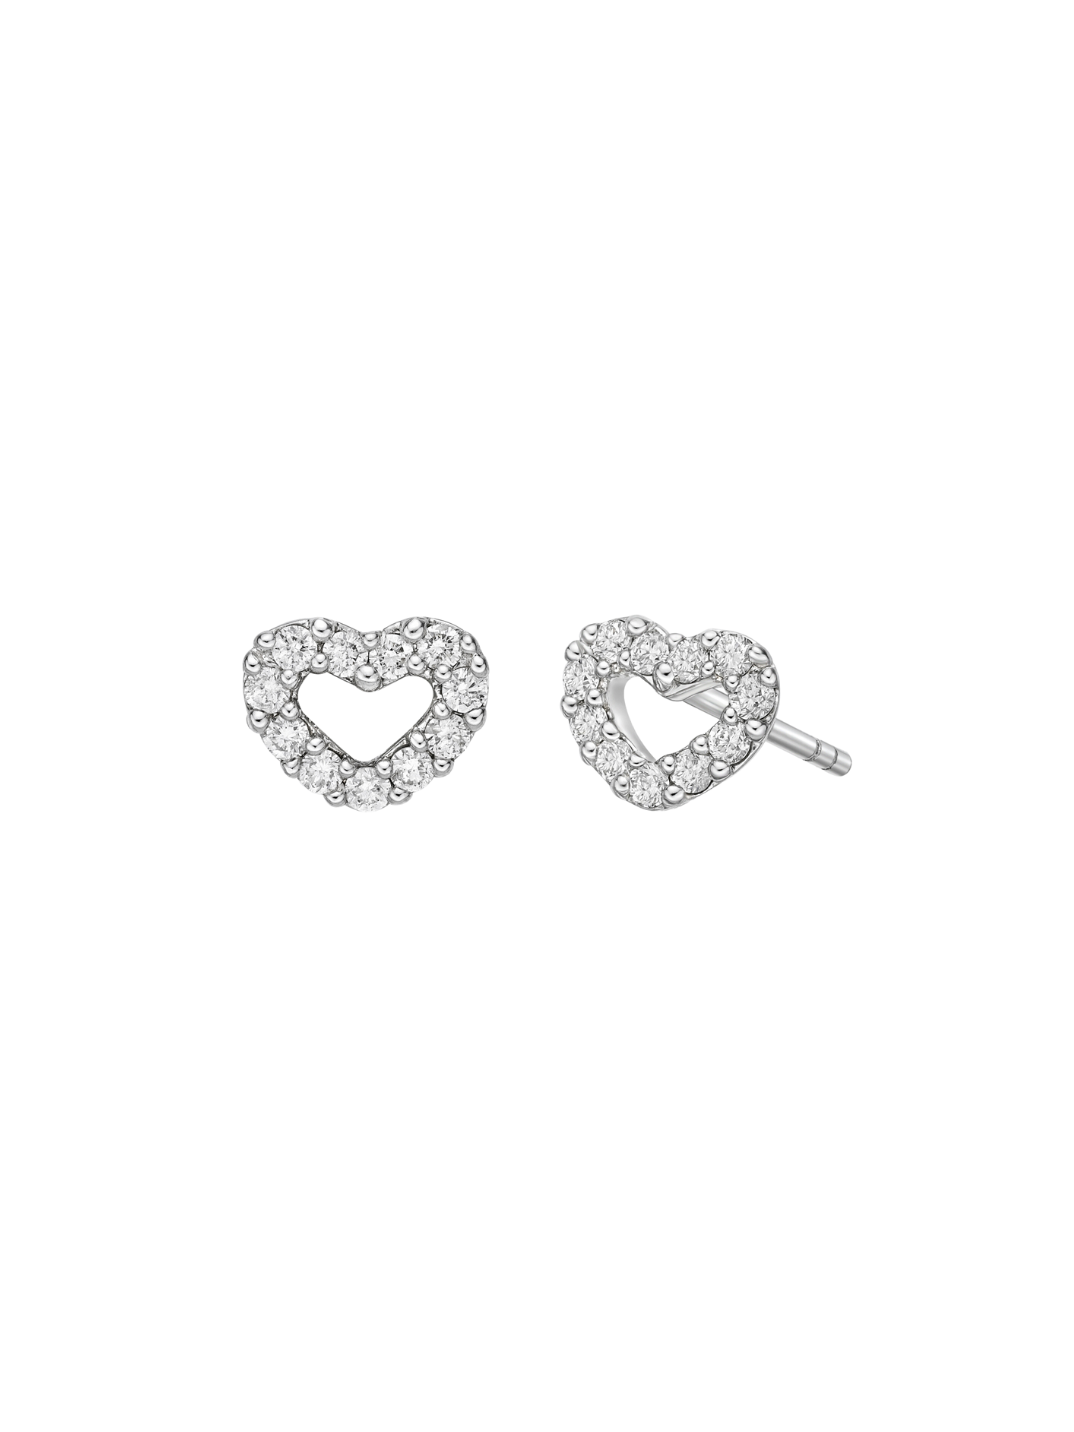 open heart stud earrings diamond earrings women's jewelry